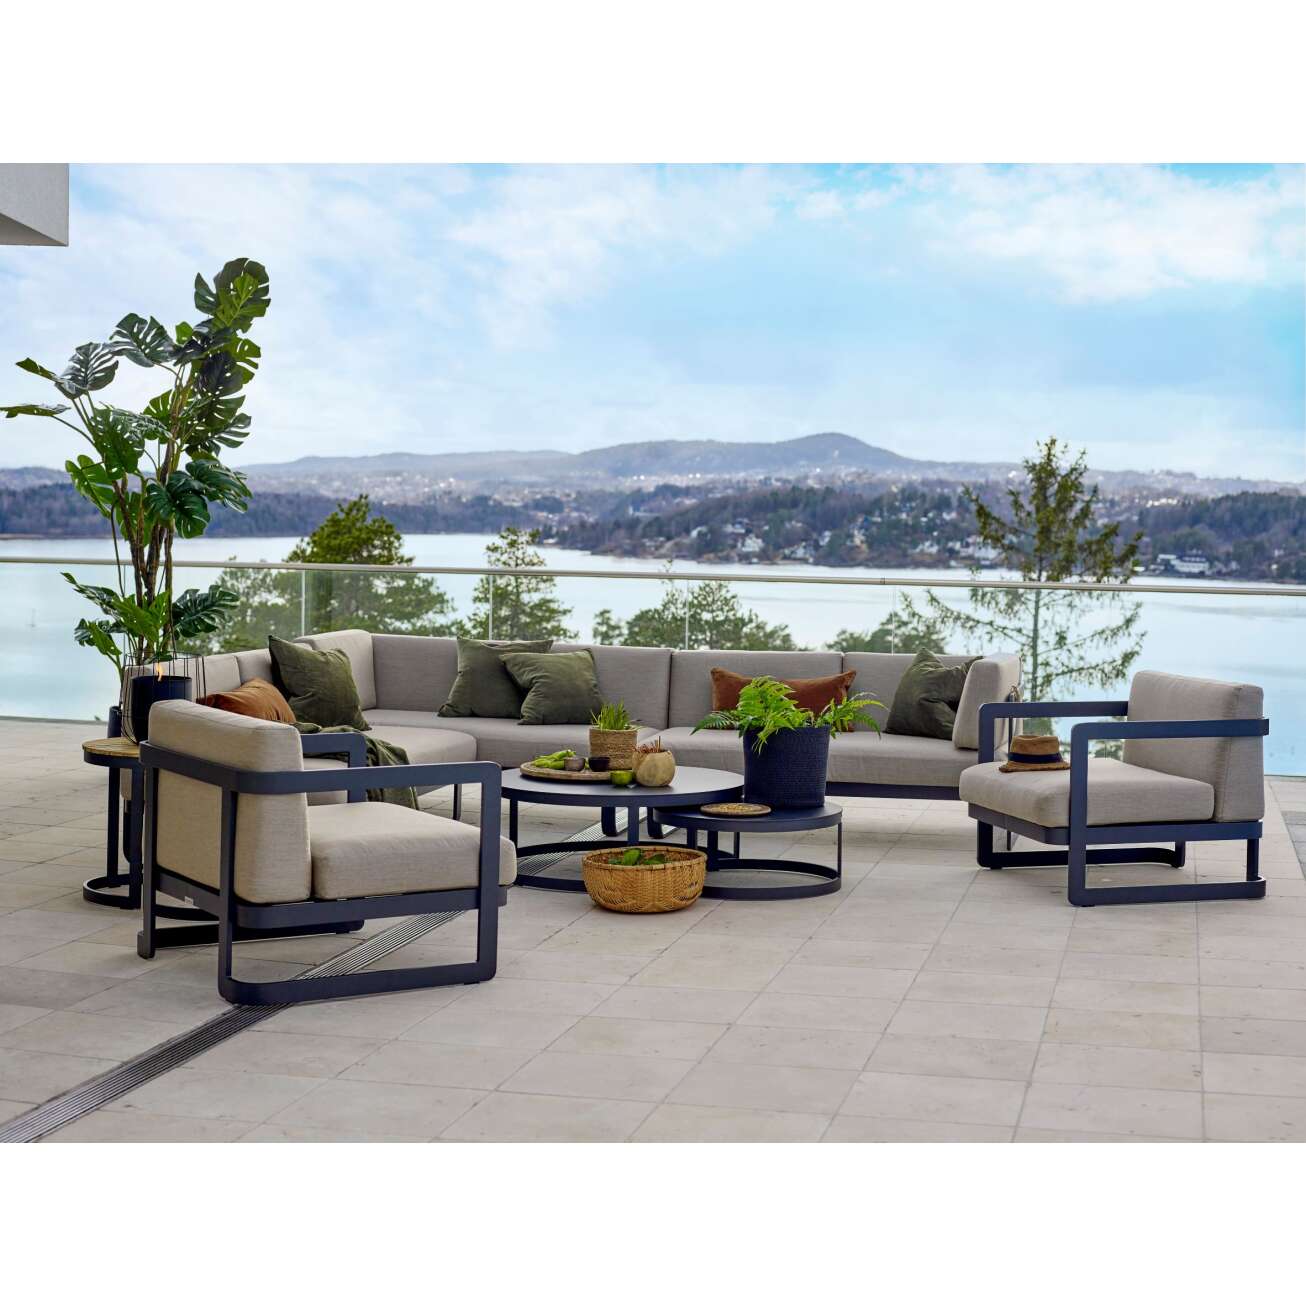 Gardenart kaki utesofa og to stoler pluss runde sofabord med flott utsikt bak